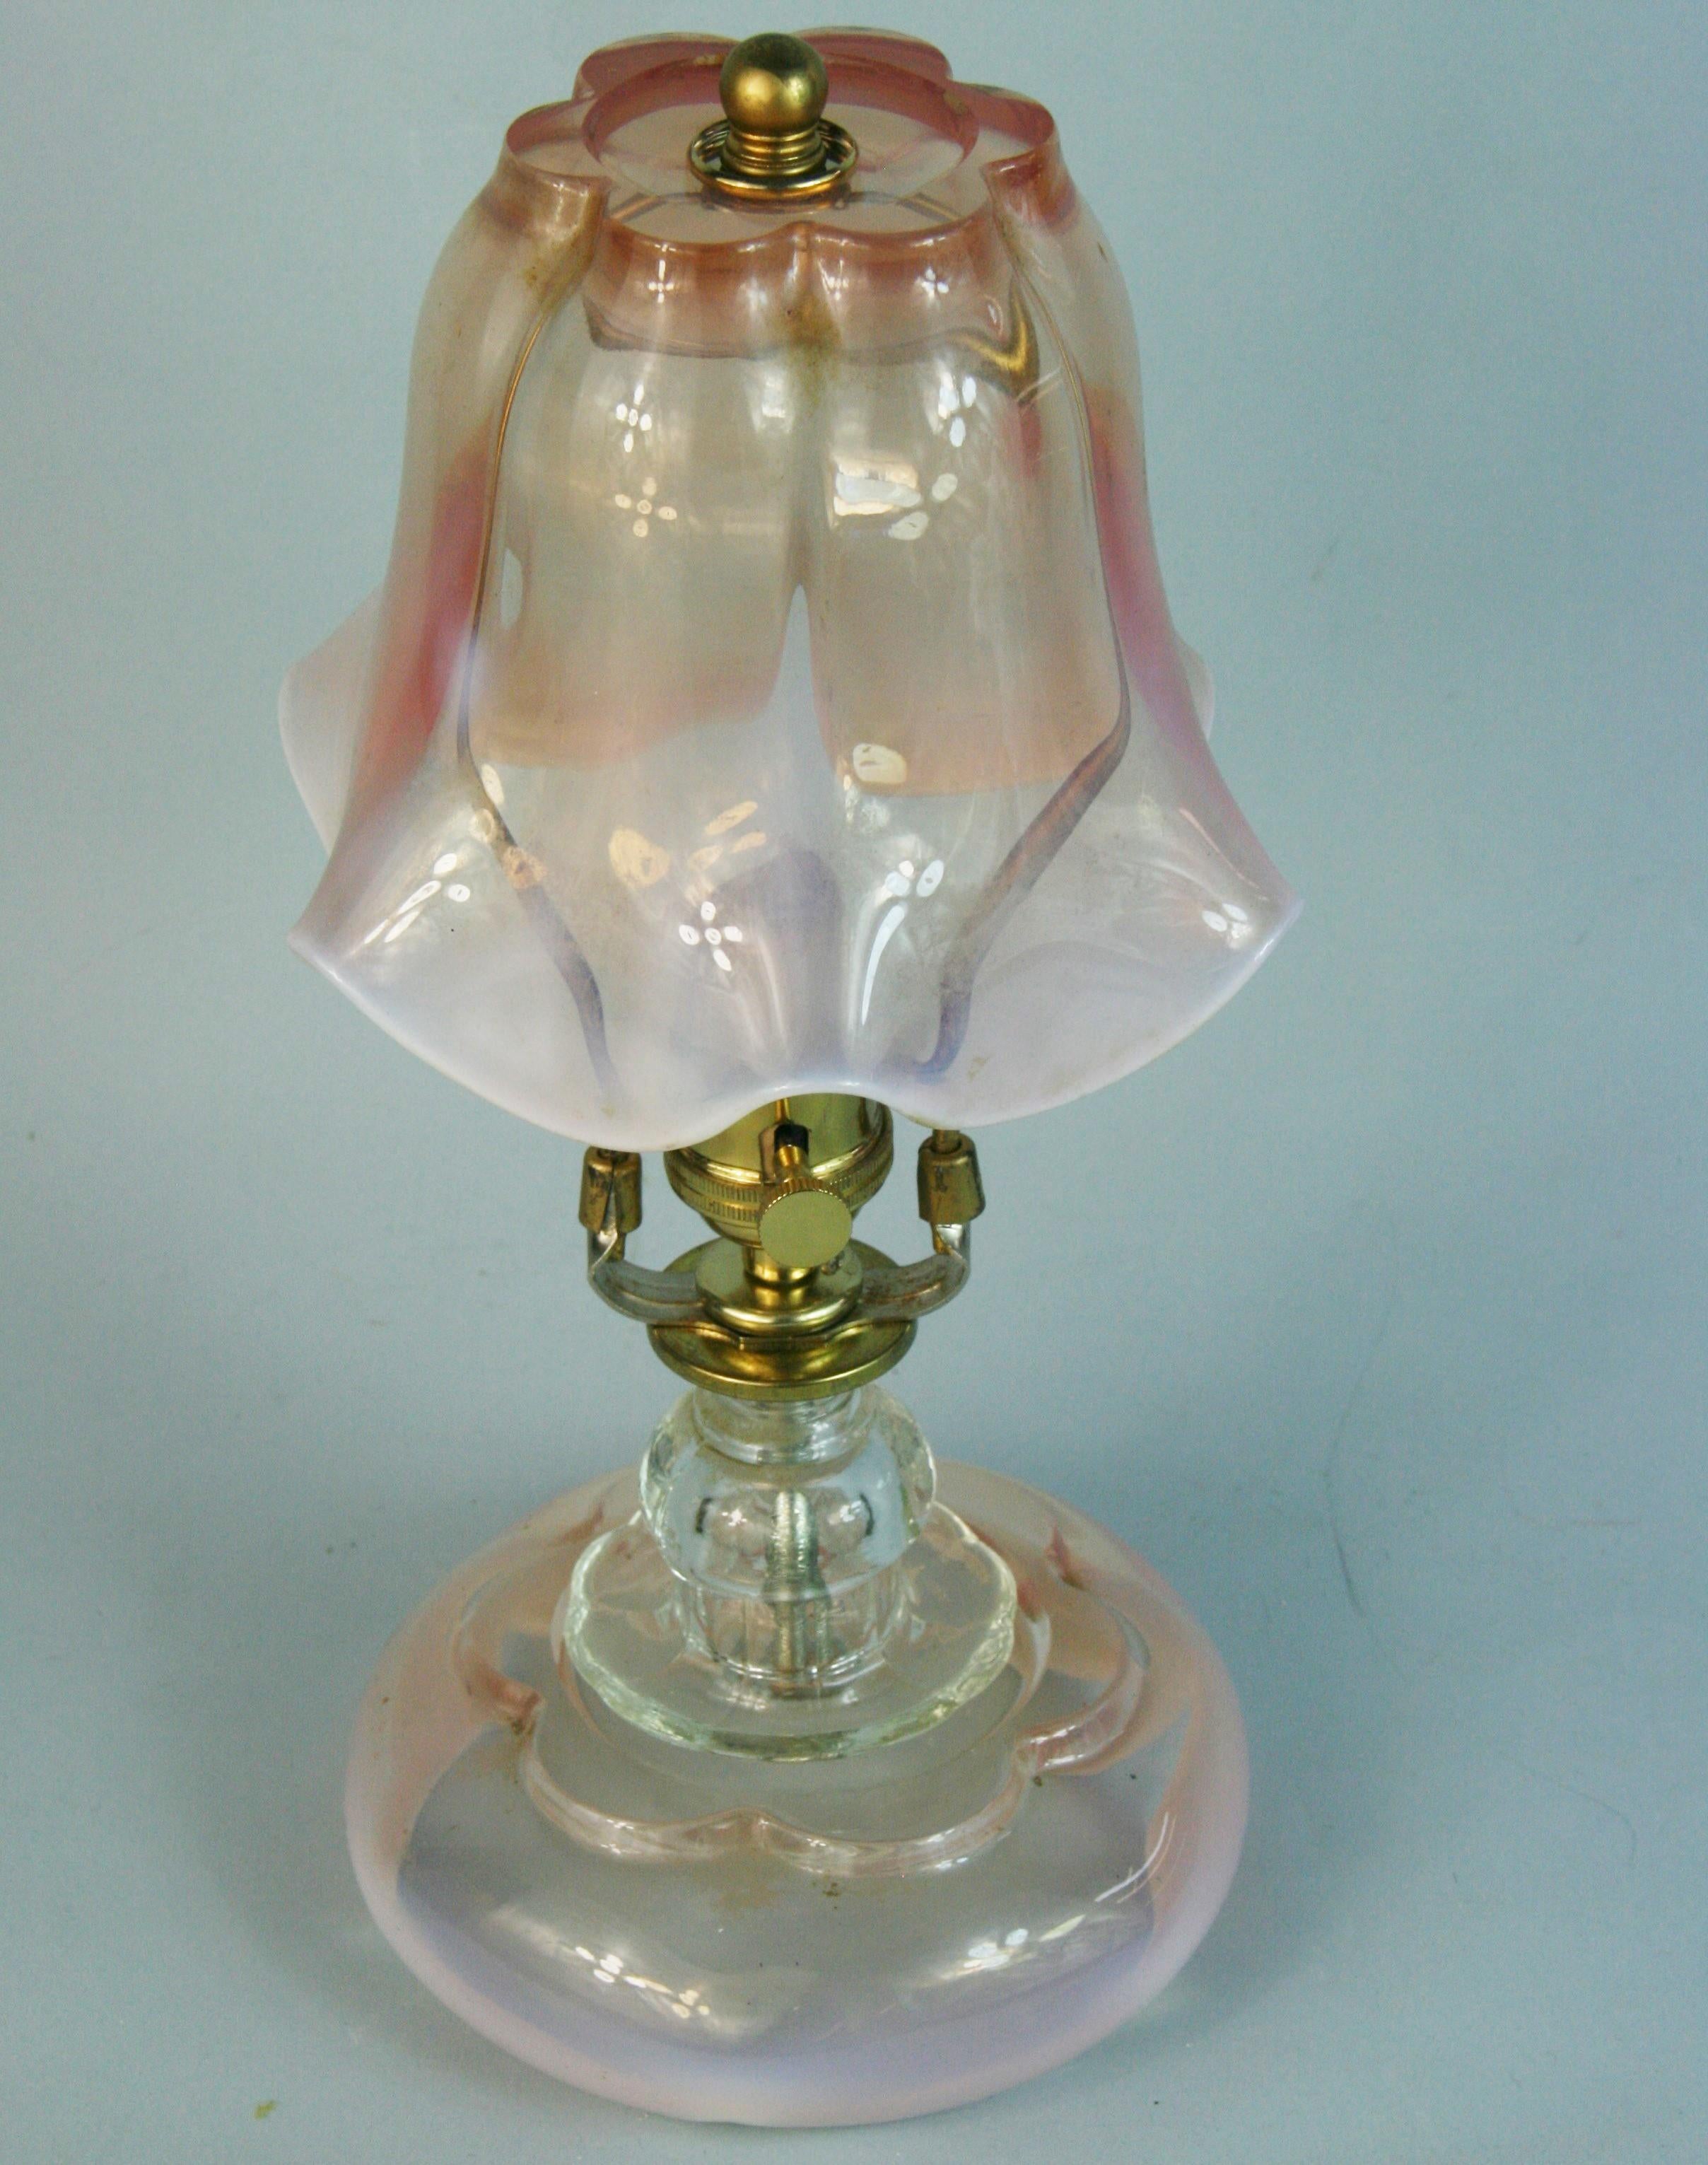 1606 Atemberaubendes Paar Murano-Glaslampen aus Italien .1940er Jahre
Schönes blassrosa, weißes und klares Glas.
Glockenförmiger Schirm mit gewölbtem Rand.
Klares Glas, das sich vom Glasschirm und Sockel trennt
Rewired übernimmt die